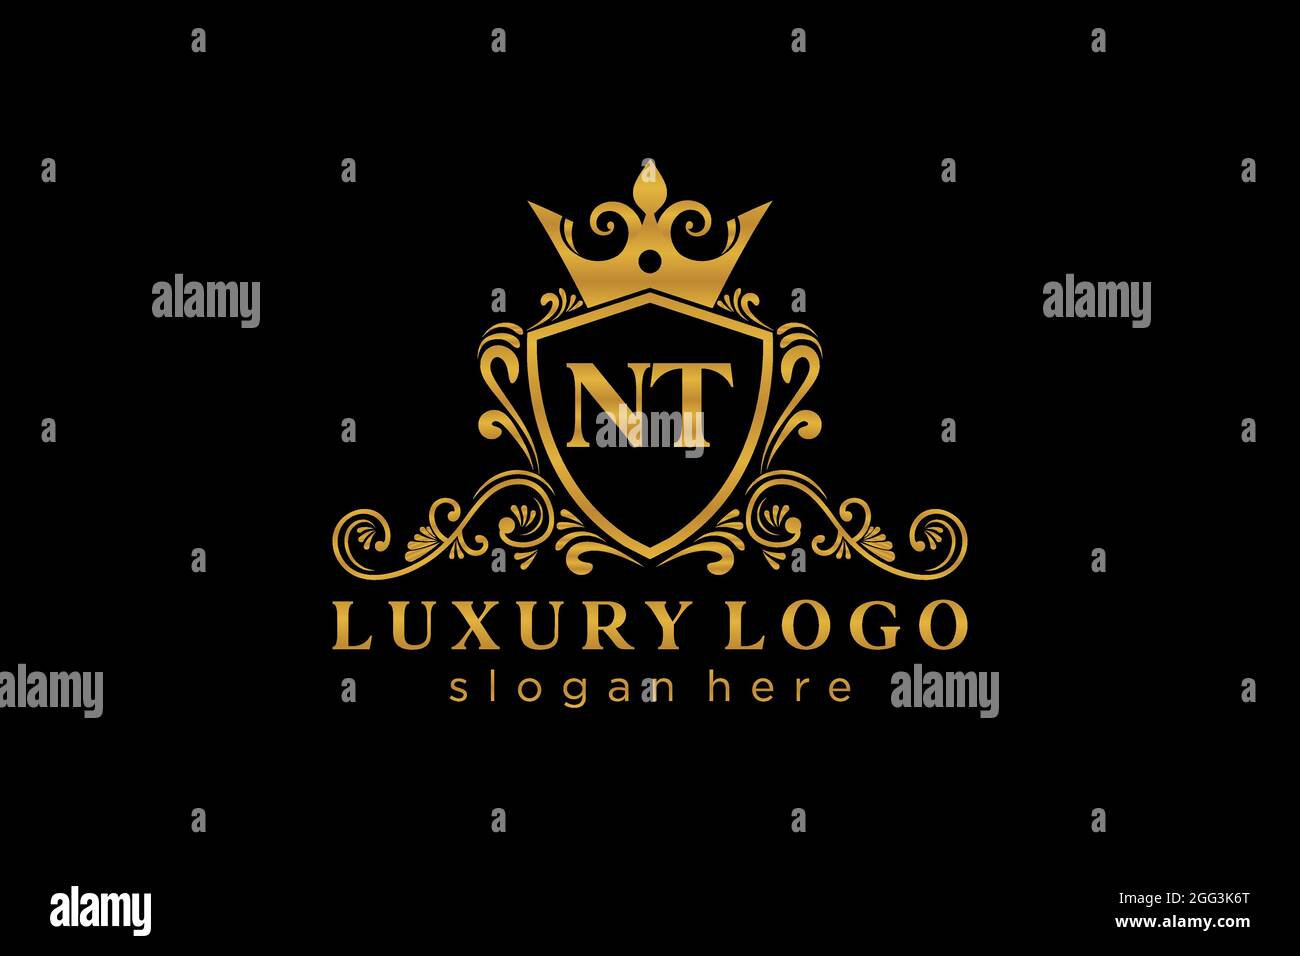 NT Letter Royal Luxury Logo Vorlage in Vektorgrafik für Restaurant, Royalty, Boutique, Cafe, Hotel, Heraldisch, Schmuck, Mode und andere Vektor illustrr Stock Vektor